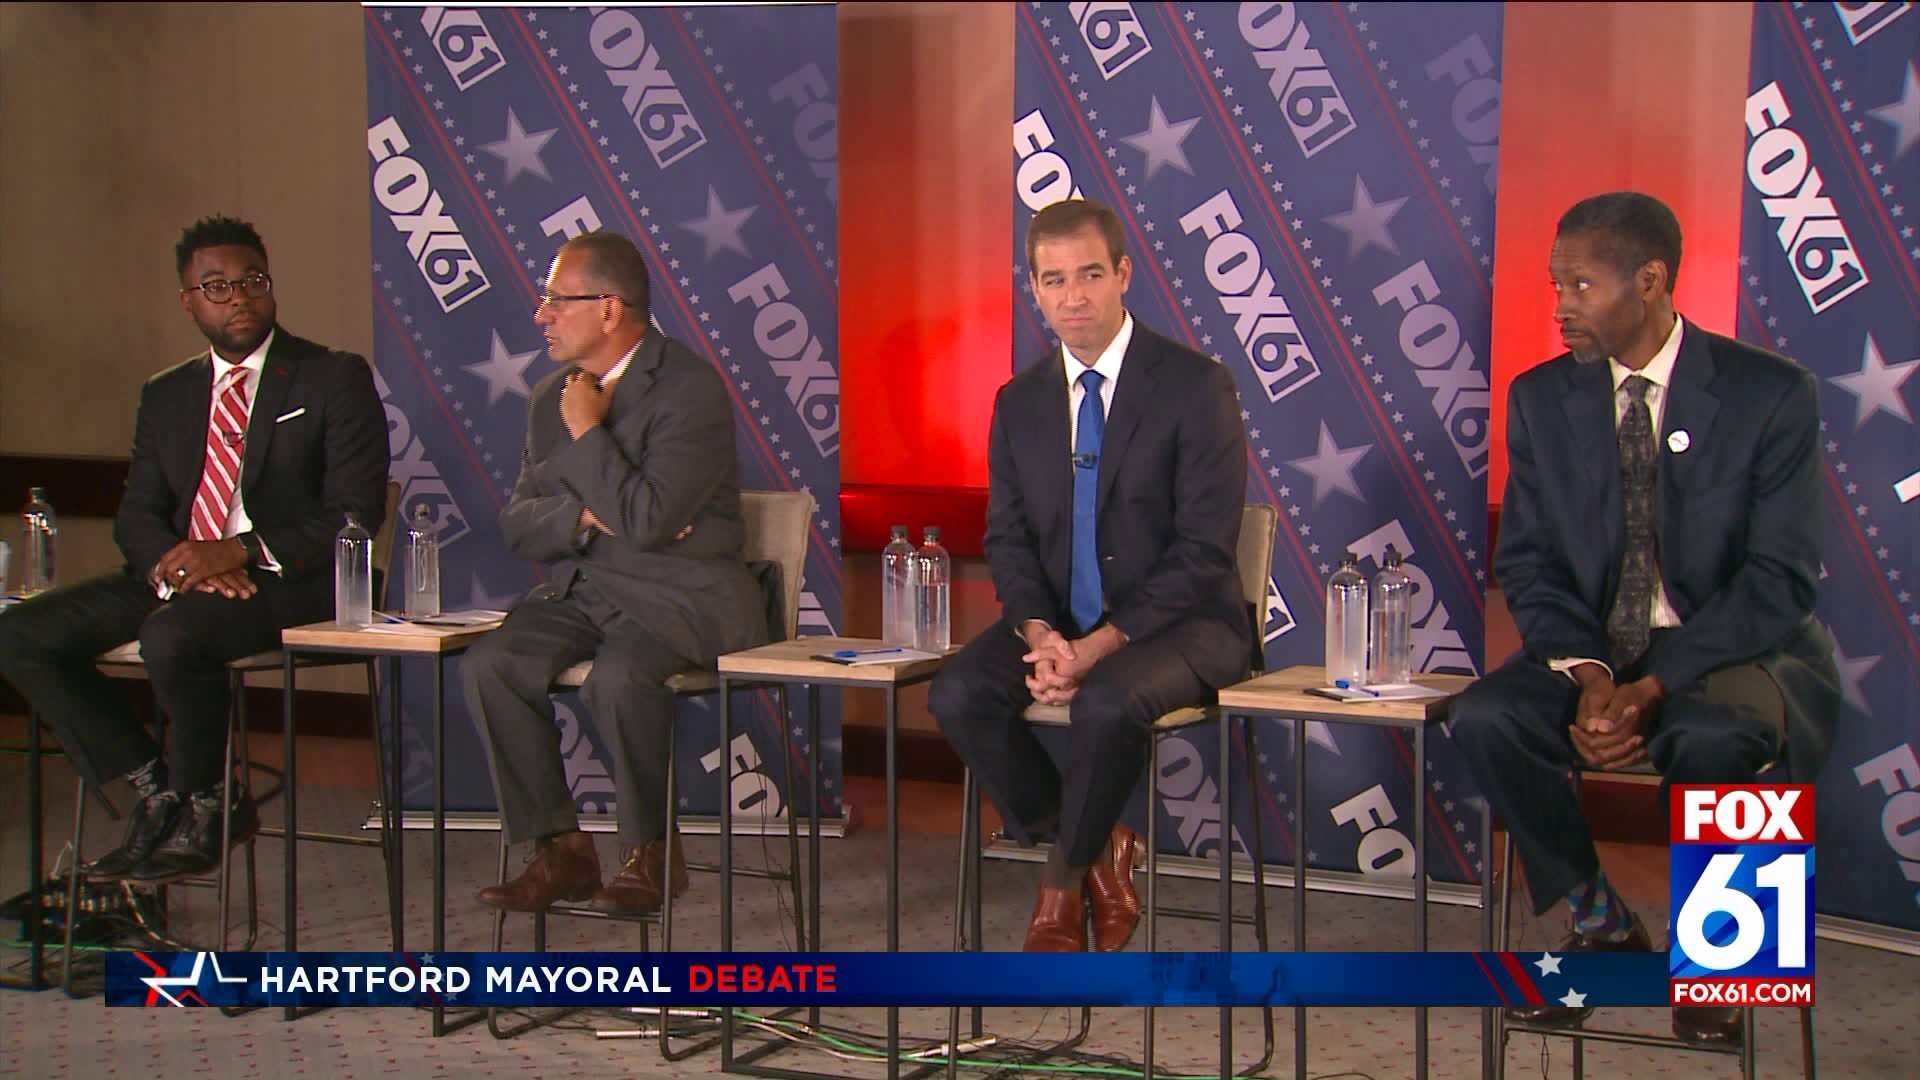 Hartford Mayoral Debate: Trust